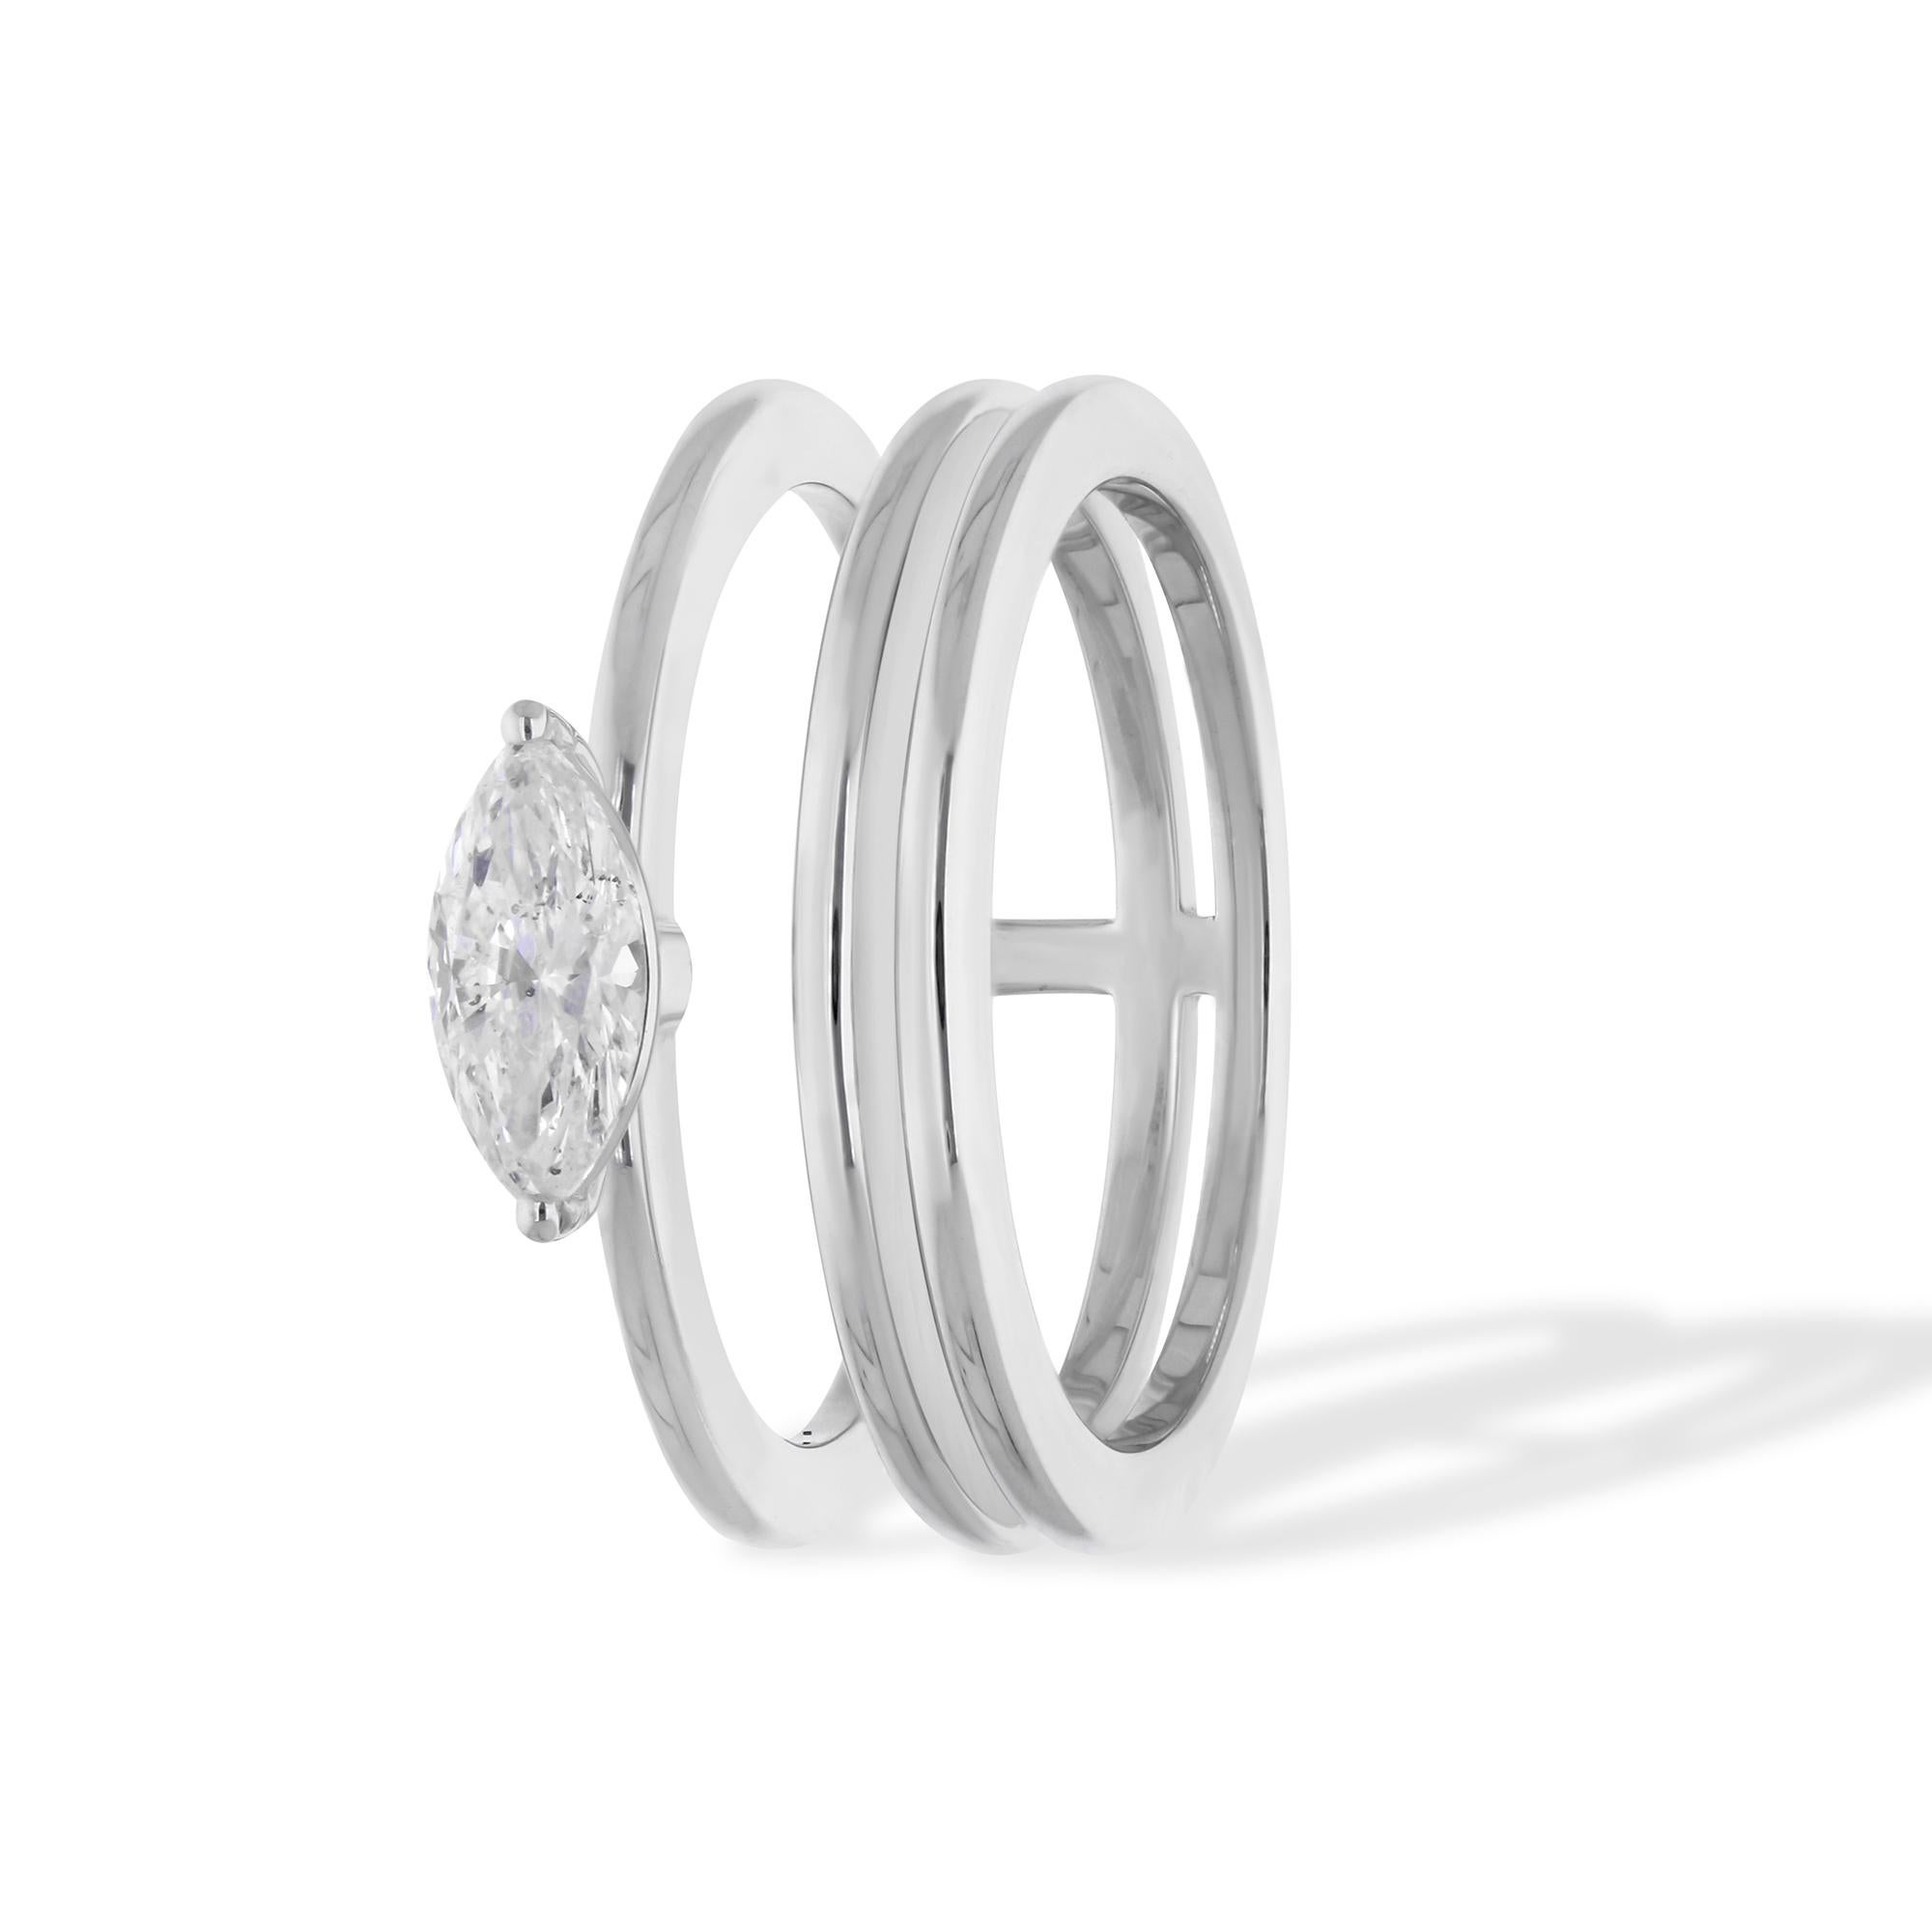 Erhöhen Sie Ihren Stil mit zeitloser Raffinesse mit diesem exquisiten 0,47 Karat Solitär-Diamantring, der sorgfältig aus strahlendem 14 Karat Weißgold gefertigt ist. Ein Symbol für raffinierte Eleganz ist dieser Ring mit einem atemberaubenden